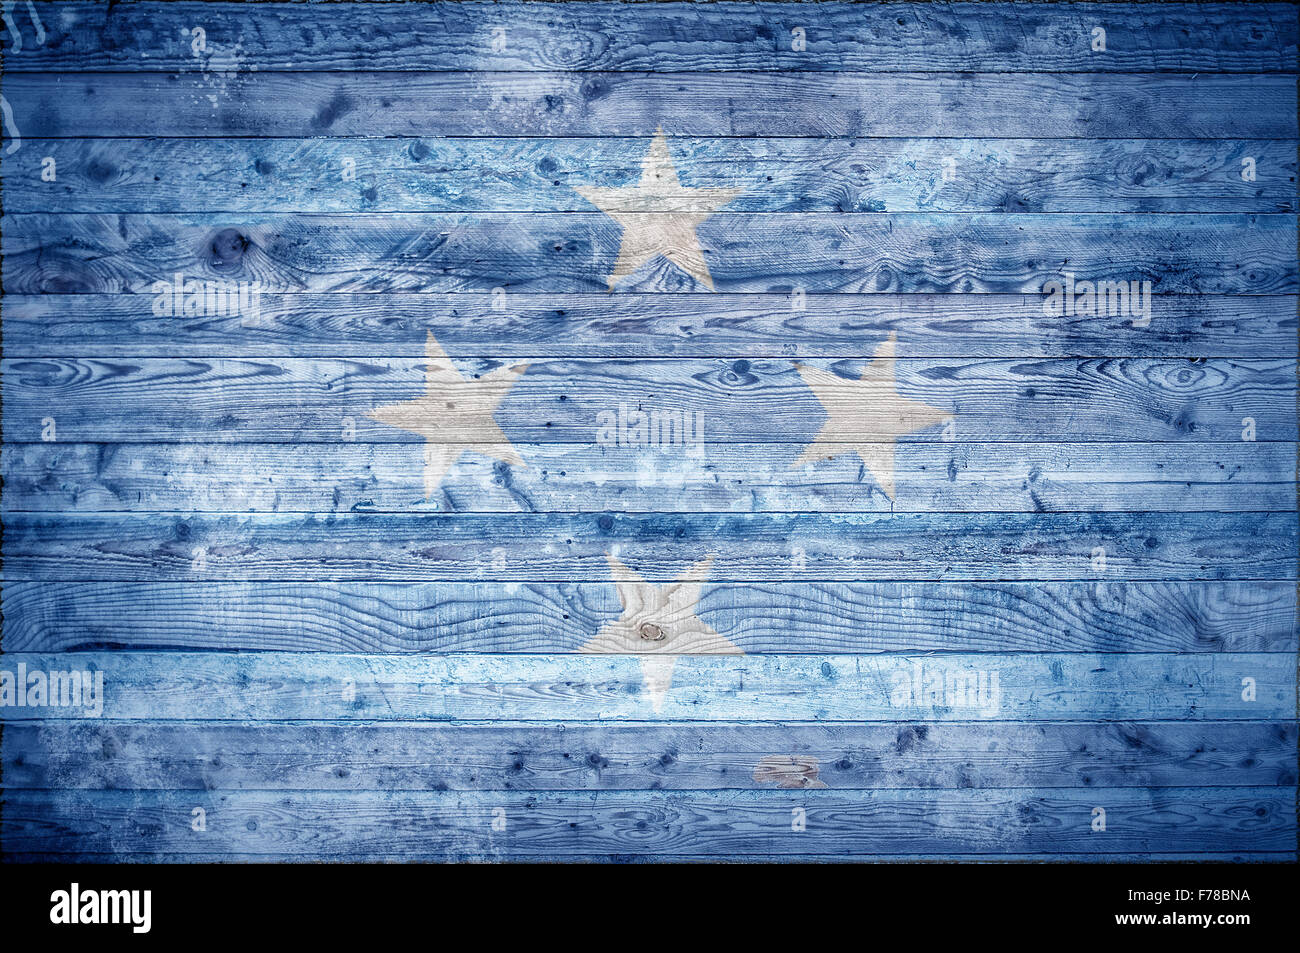 Une vignetted image de fond du drapeau de Micronésie peints sur des planches de bois d'un mur ou le plancher. Banque D'Images